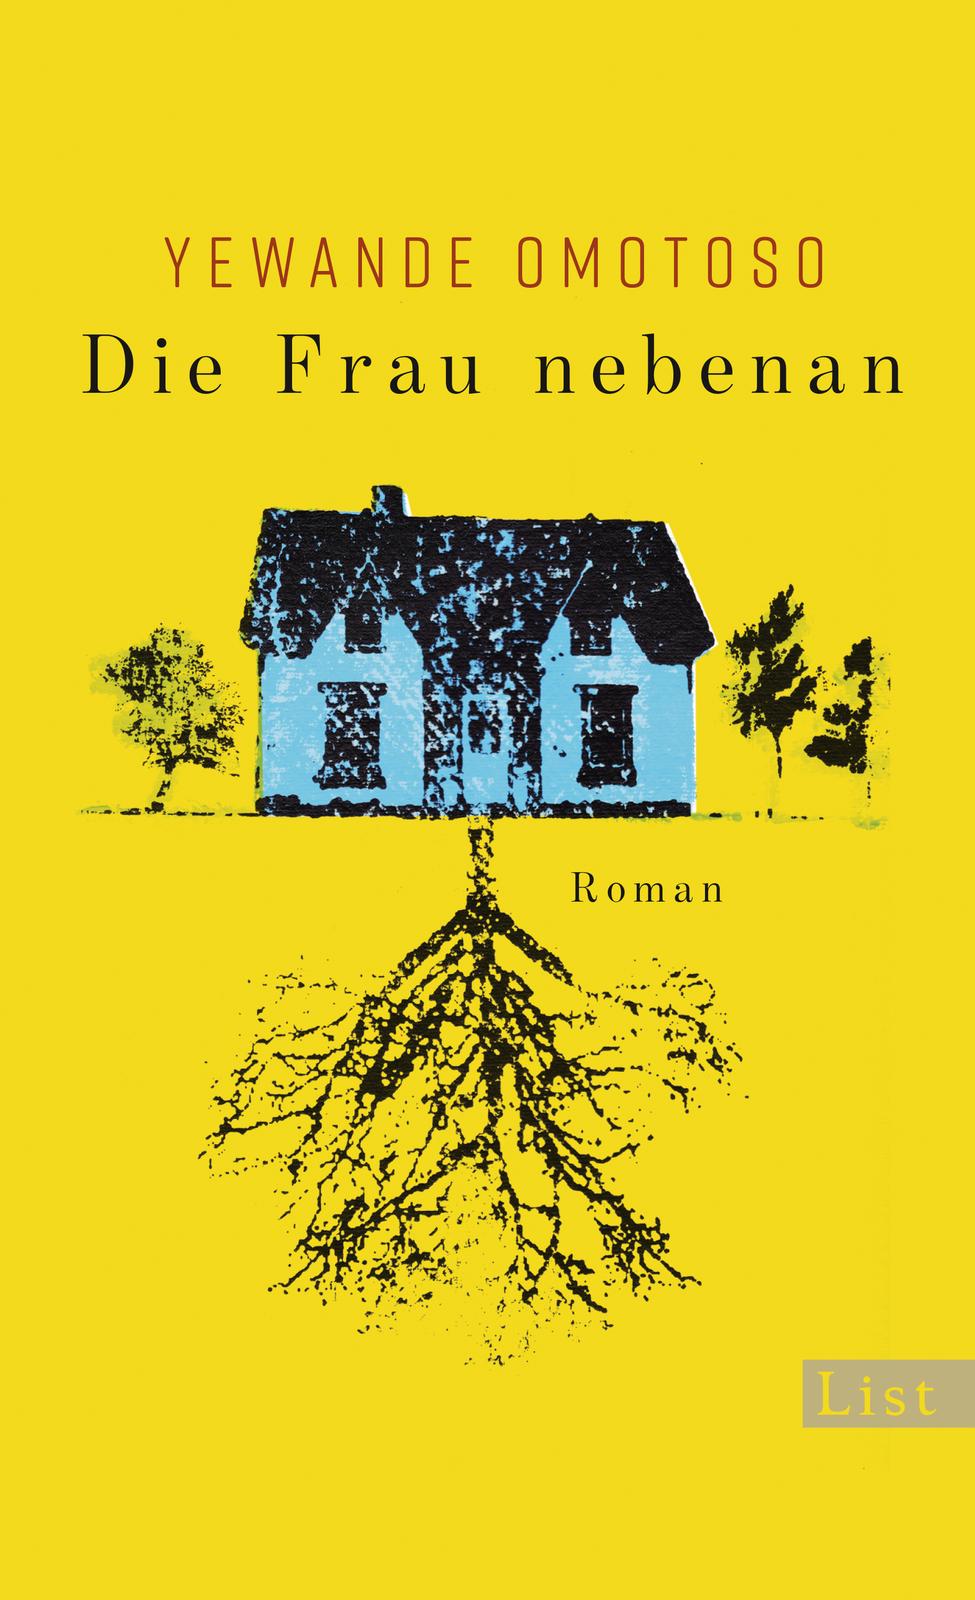 Buchcover: Die Frau nebenan © Ullstein Verlage 